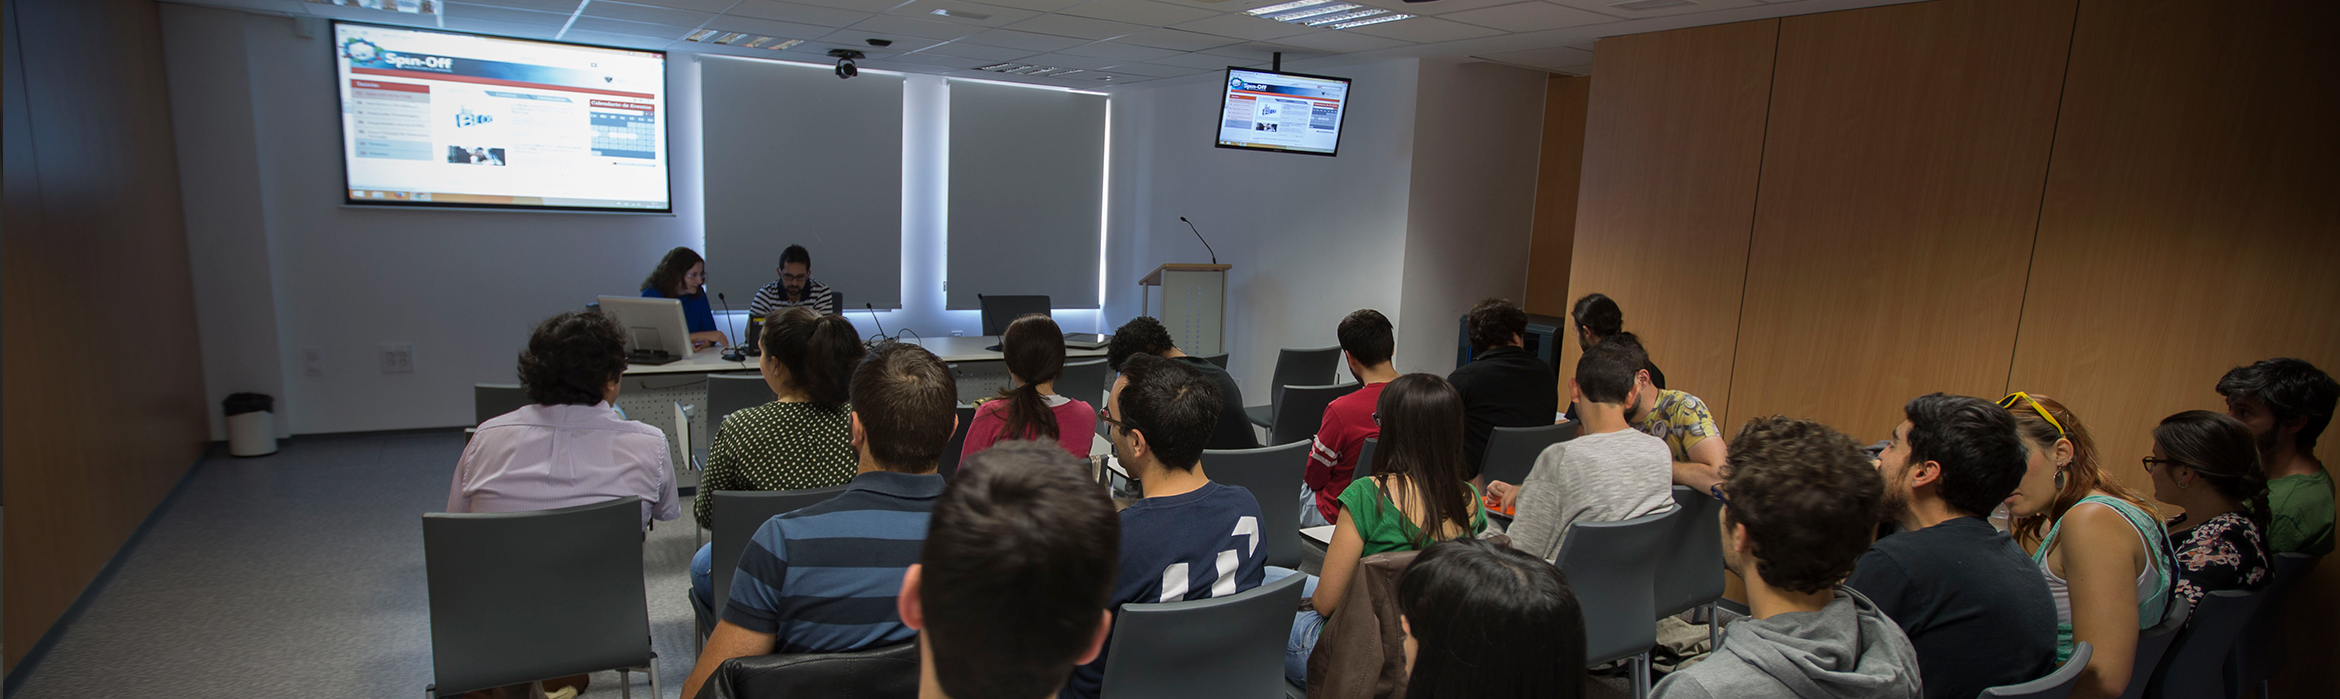 En la imagen, un grupo de personas asisten a una exposición en una sala auxiliar de conferencias en el Centro de Transferencia Tecnológica